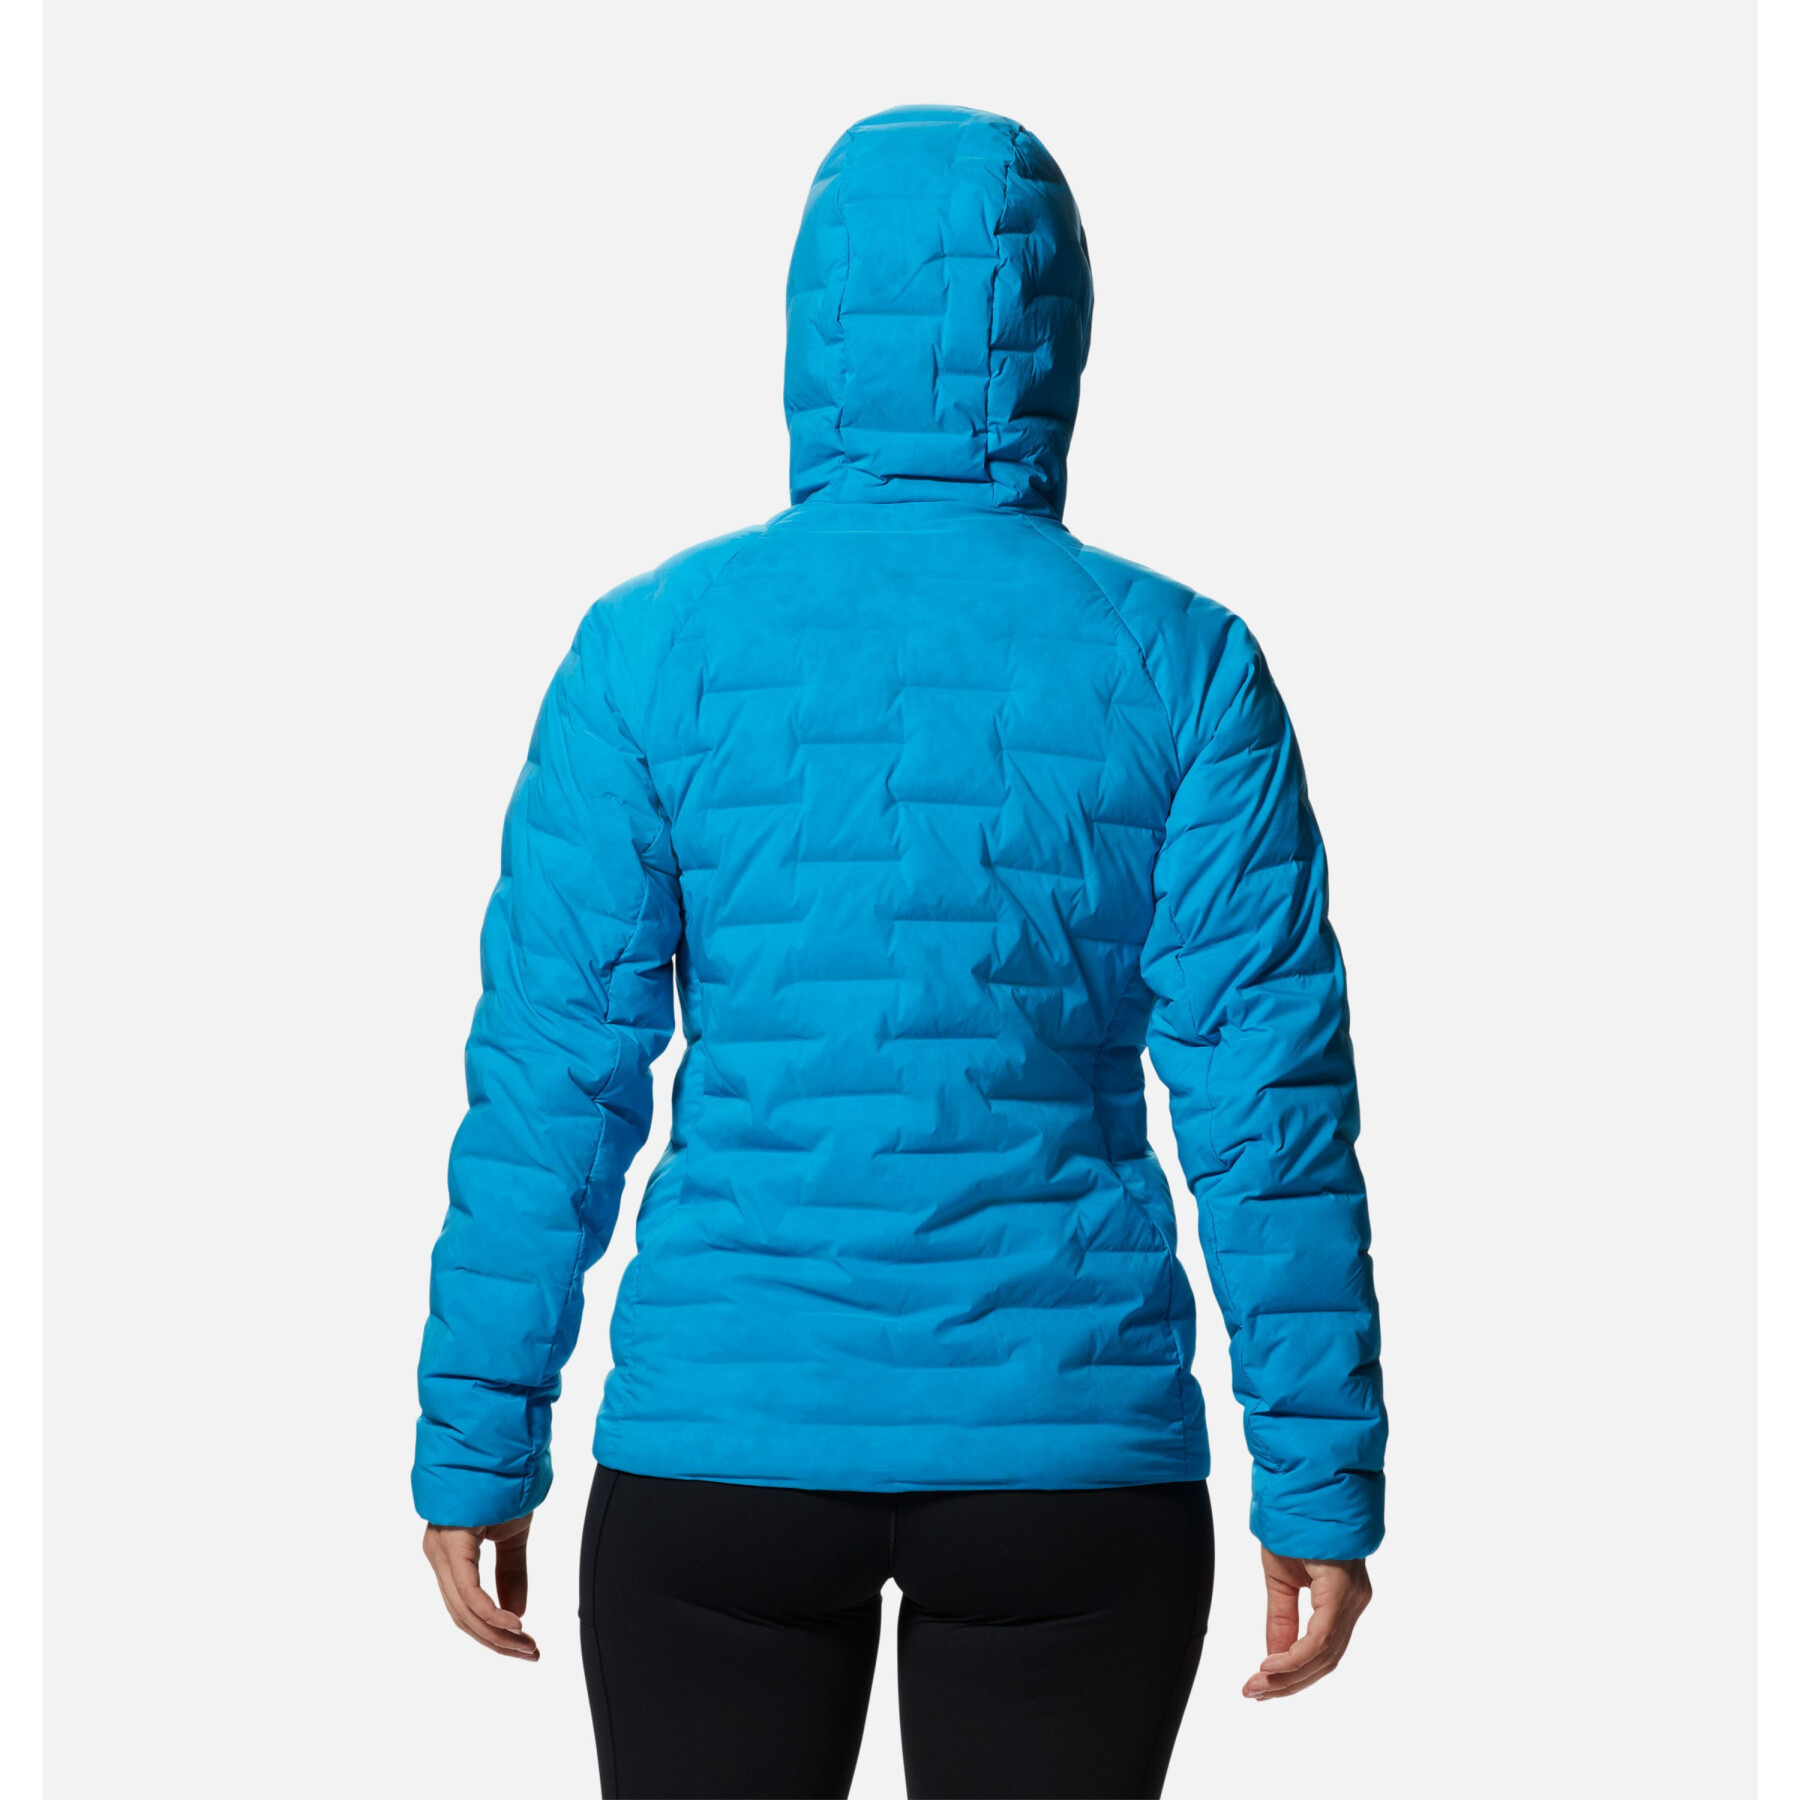 Women's hooded jacket Mountain Hardwear Stretchdown